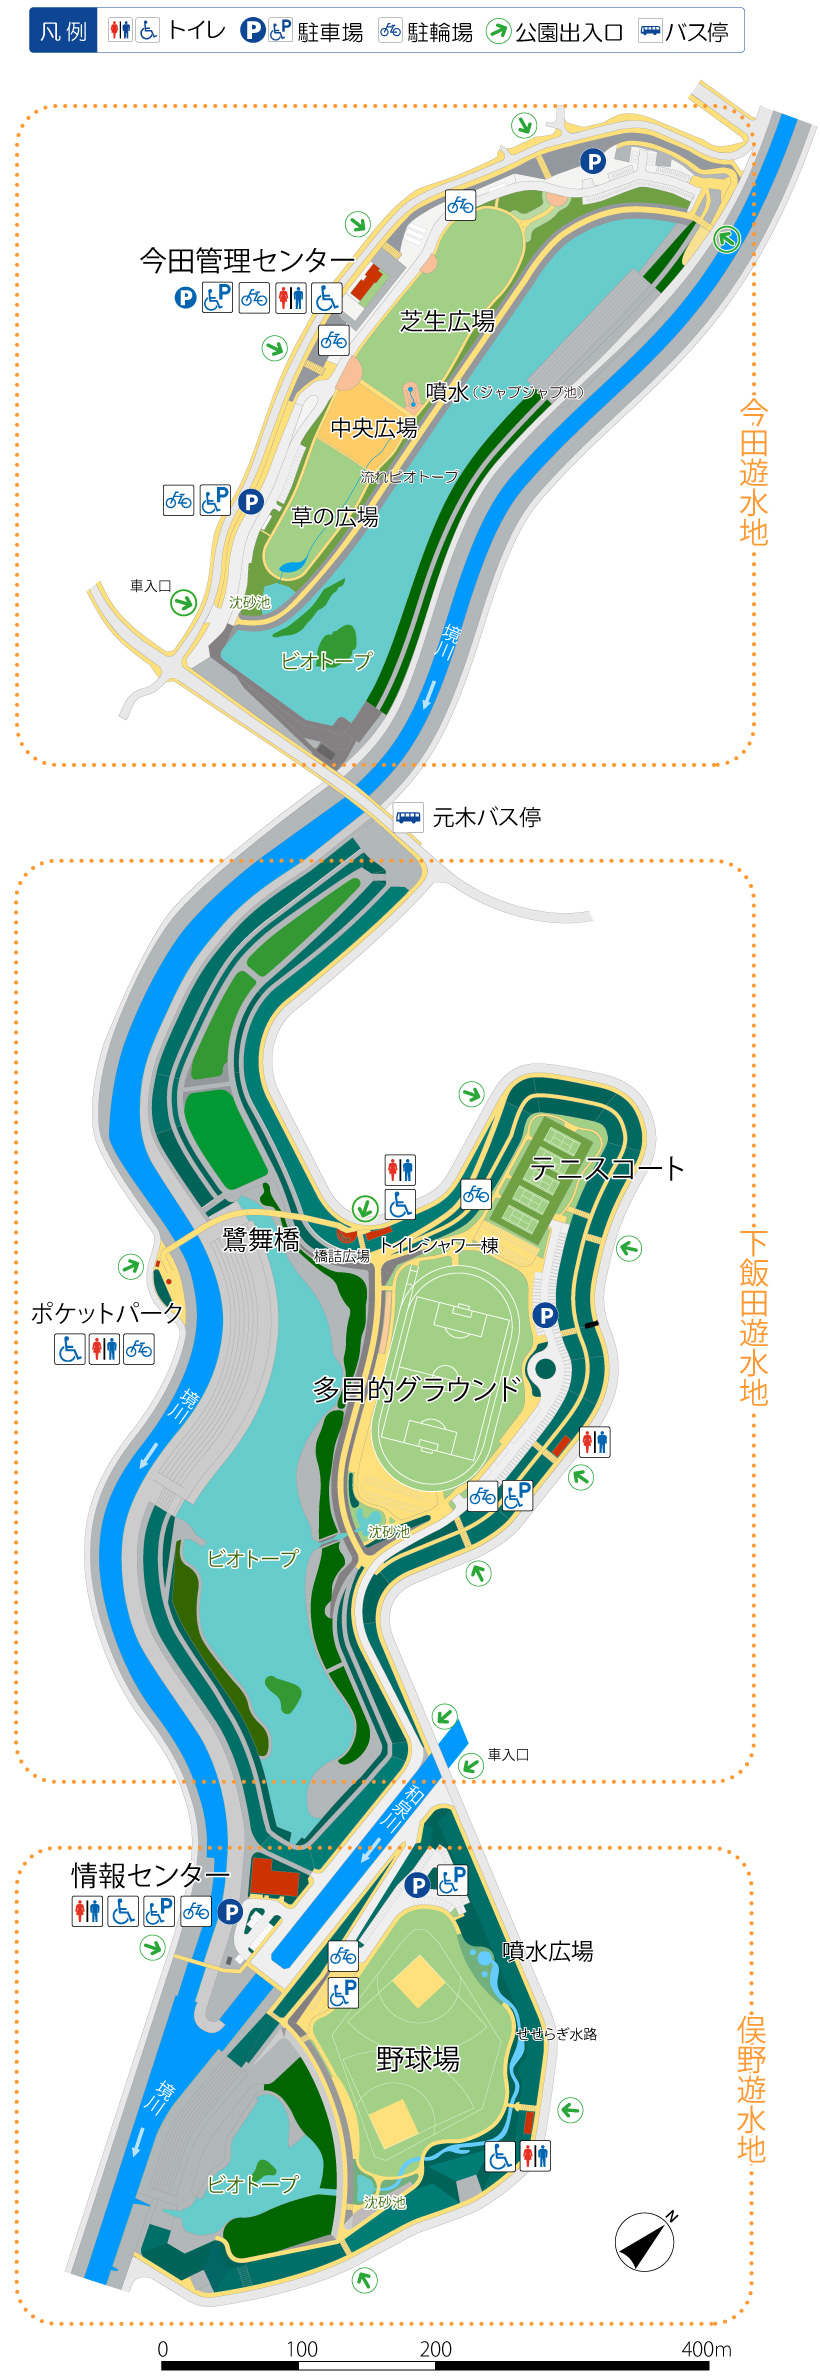 境川遊水地公園マップ